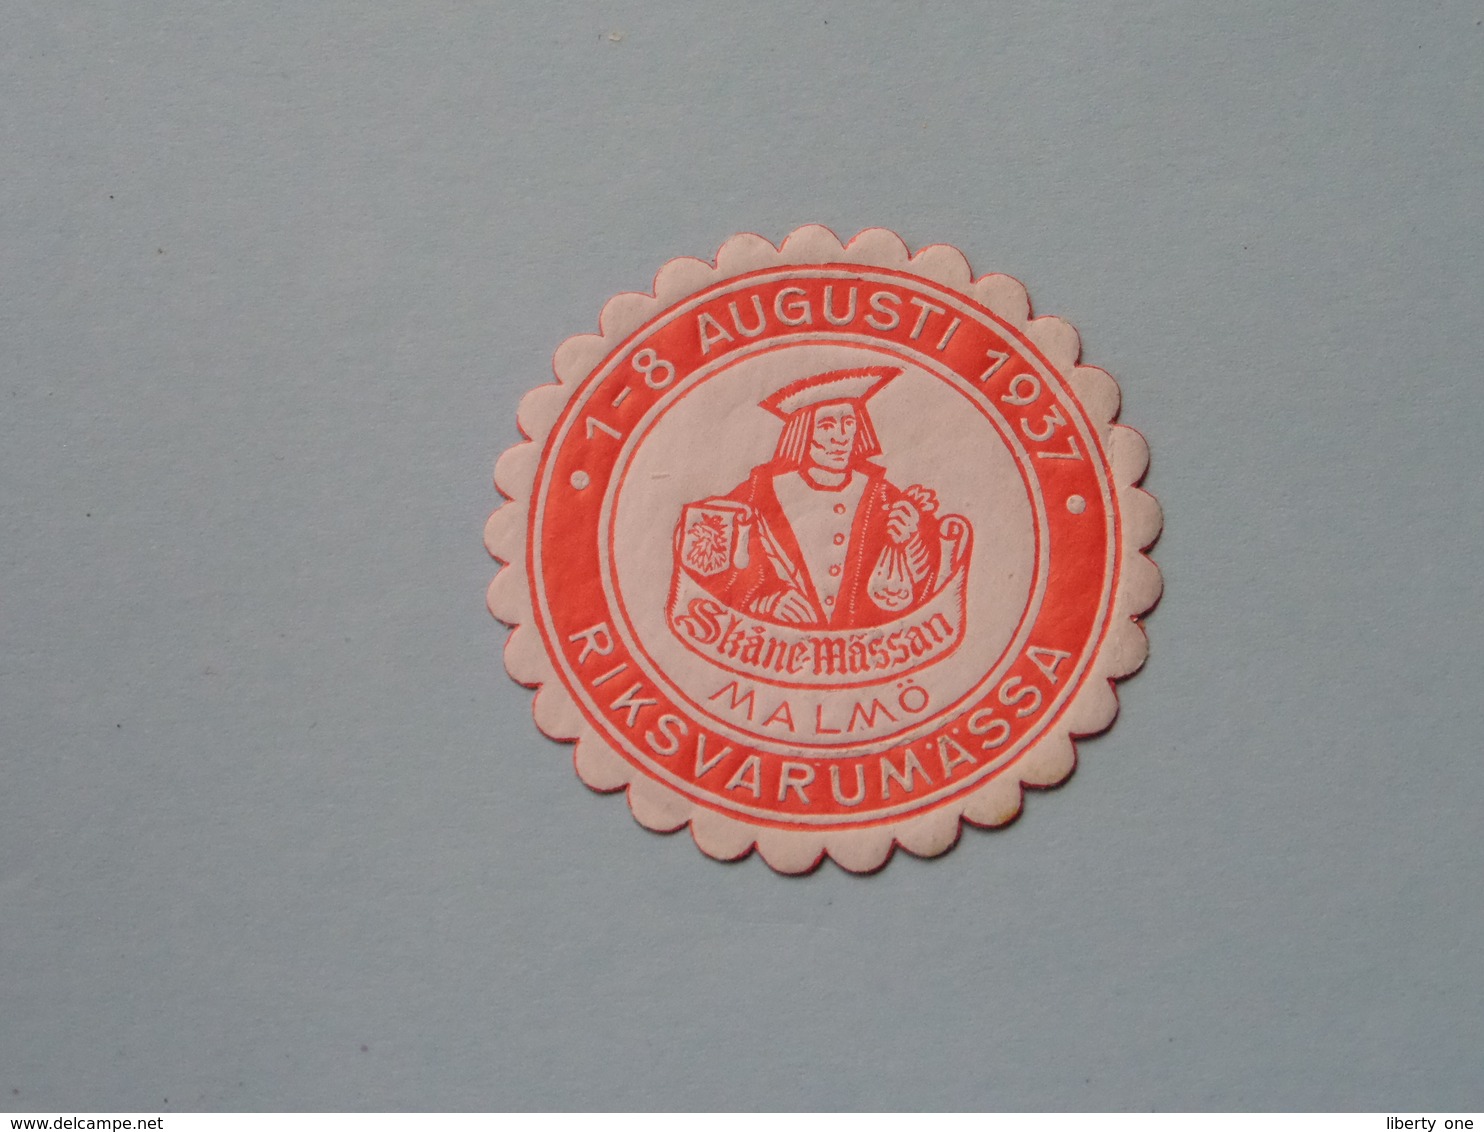 1937 RIKSVARUMASSA MALMÖ ( Sluitzegel Timbres-Vignettes Picture Stamp Verschlussmarken ) - Timbri Generalità